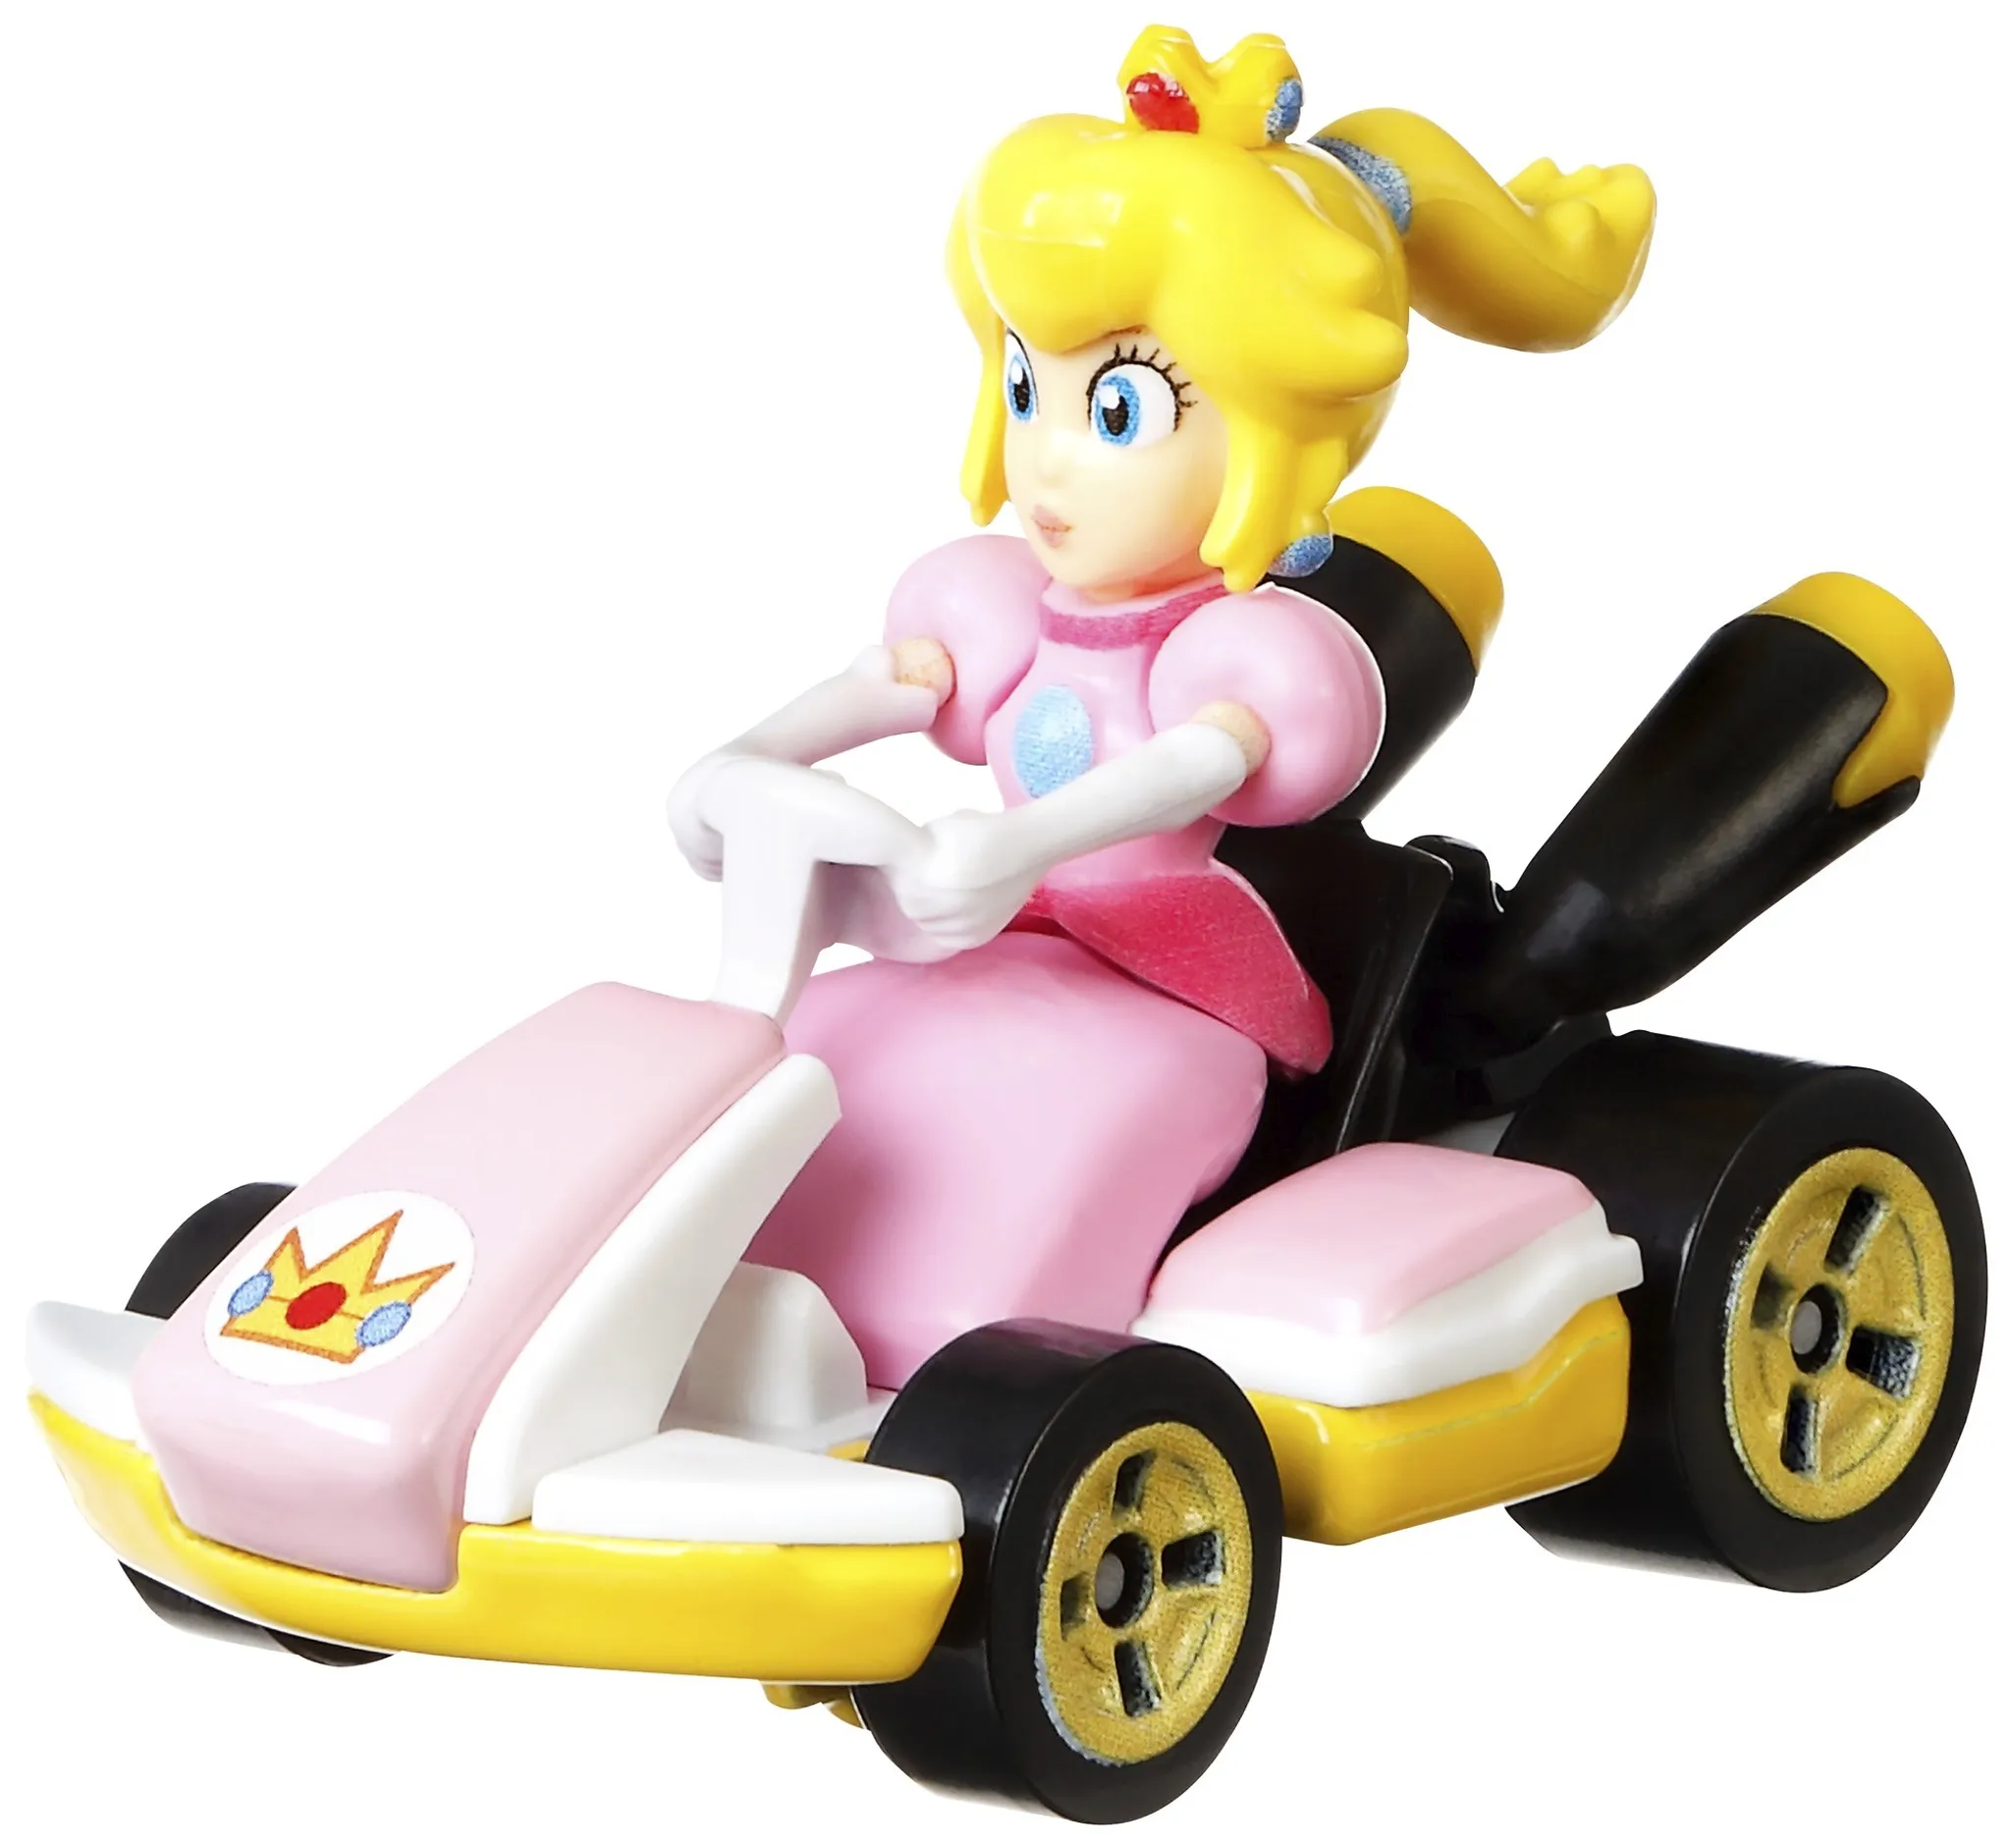 Kart 1:64 Mario Die-Cast Wheels Hot Replica